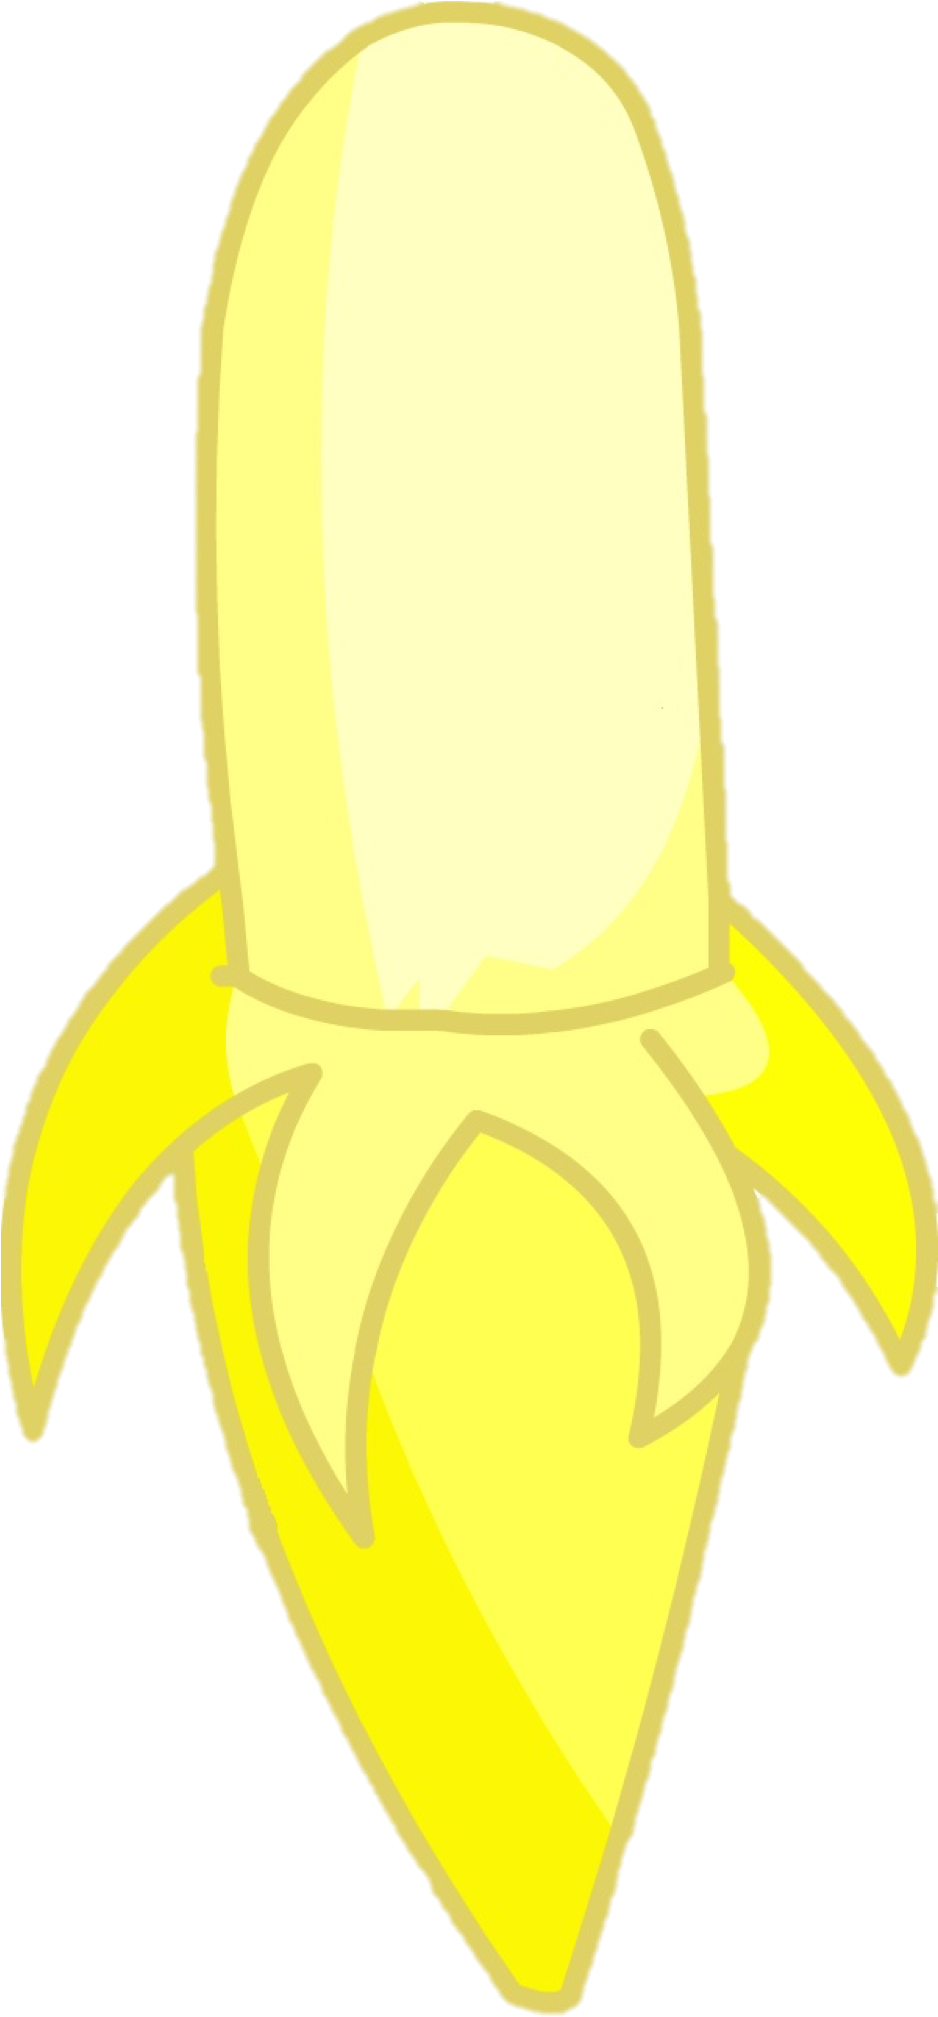 Hey Guys Look A Banana - Inanimate Insanity Banana Body (937x2192)